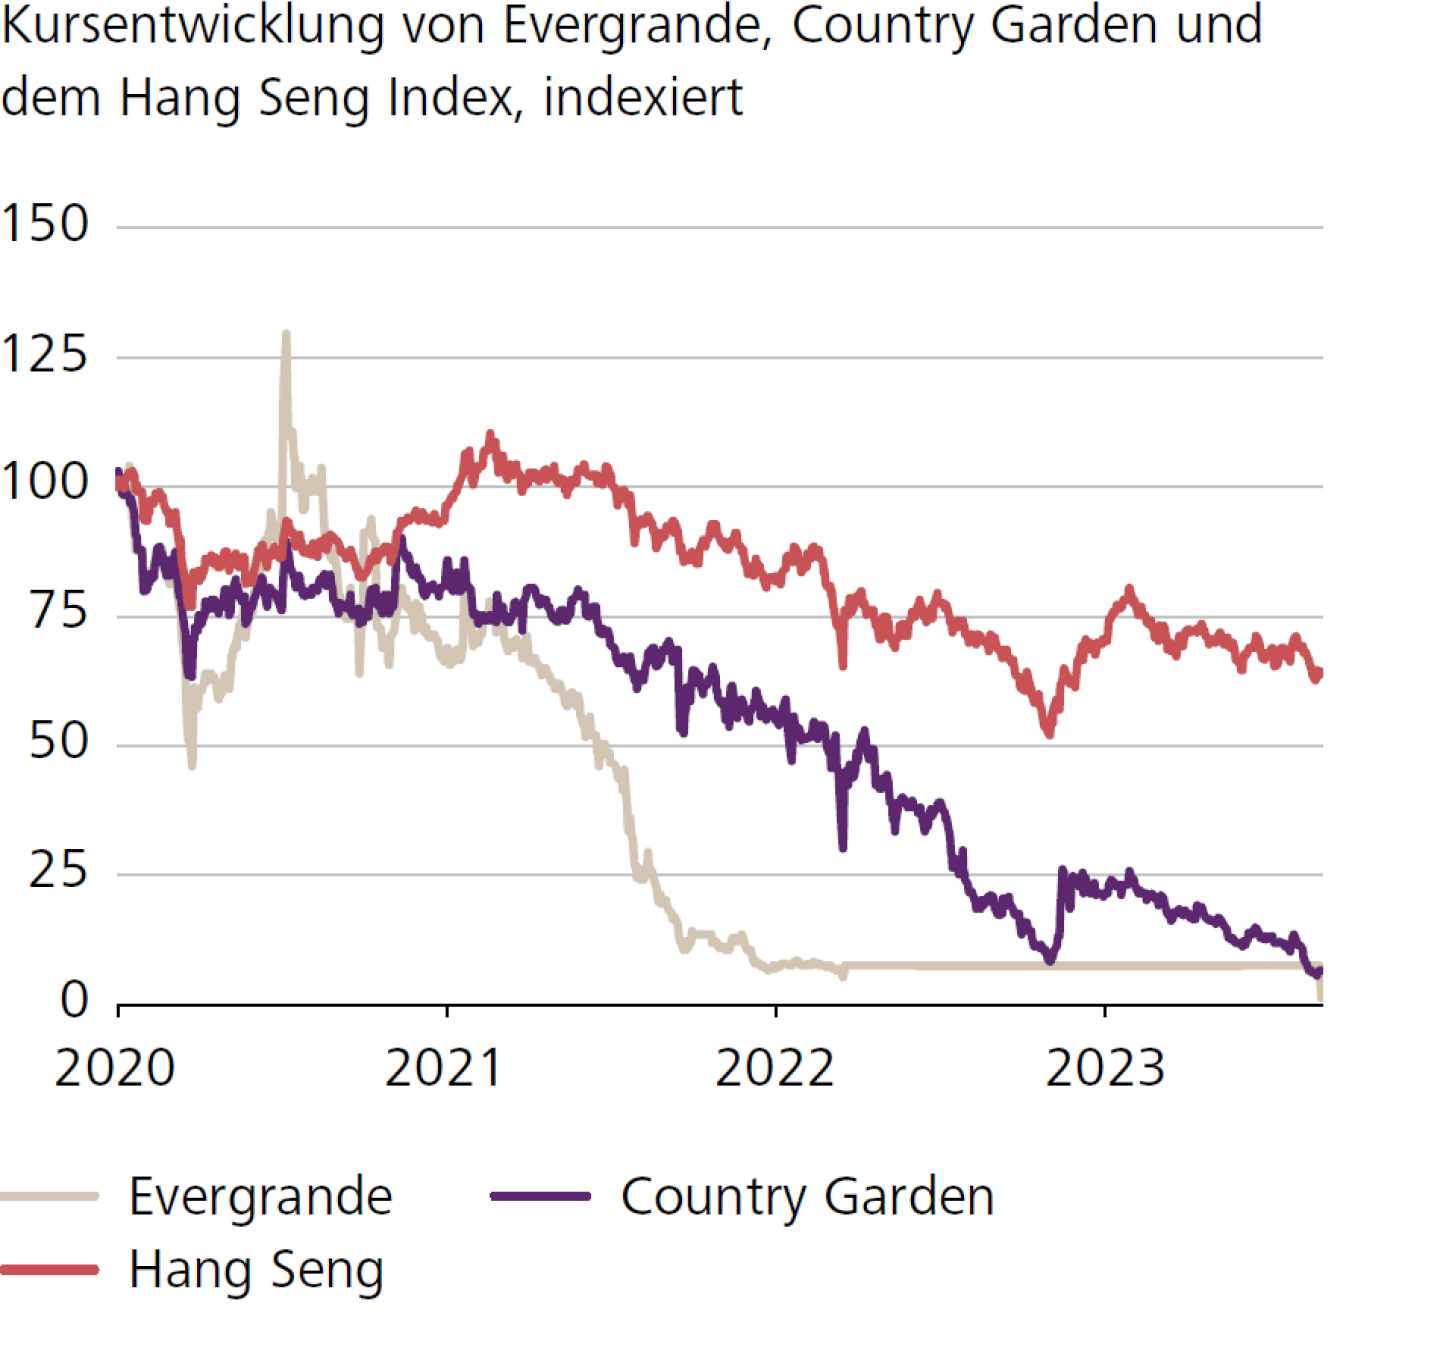 Kursentwicklung von Evergrande, Country Garden und dem Hang Seng Index, indexiert